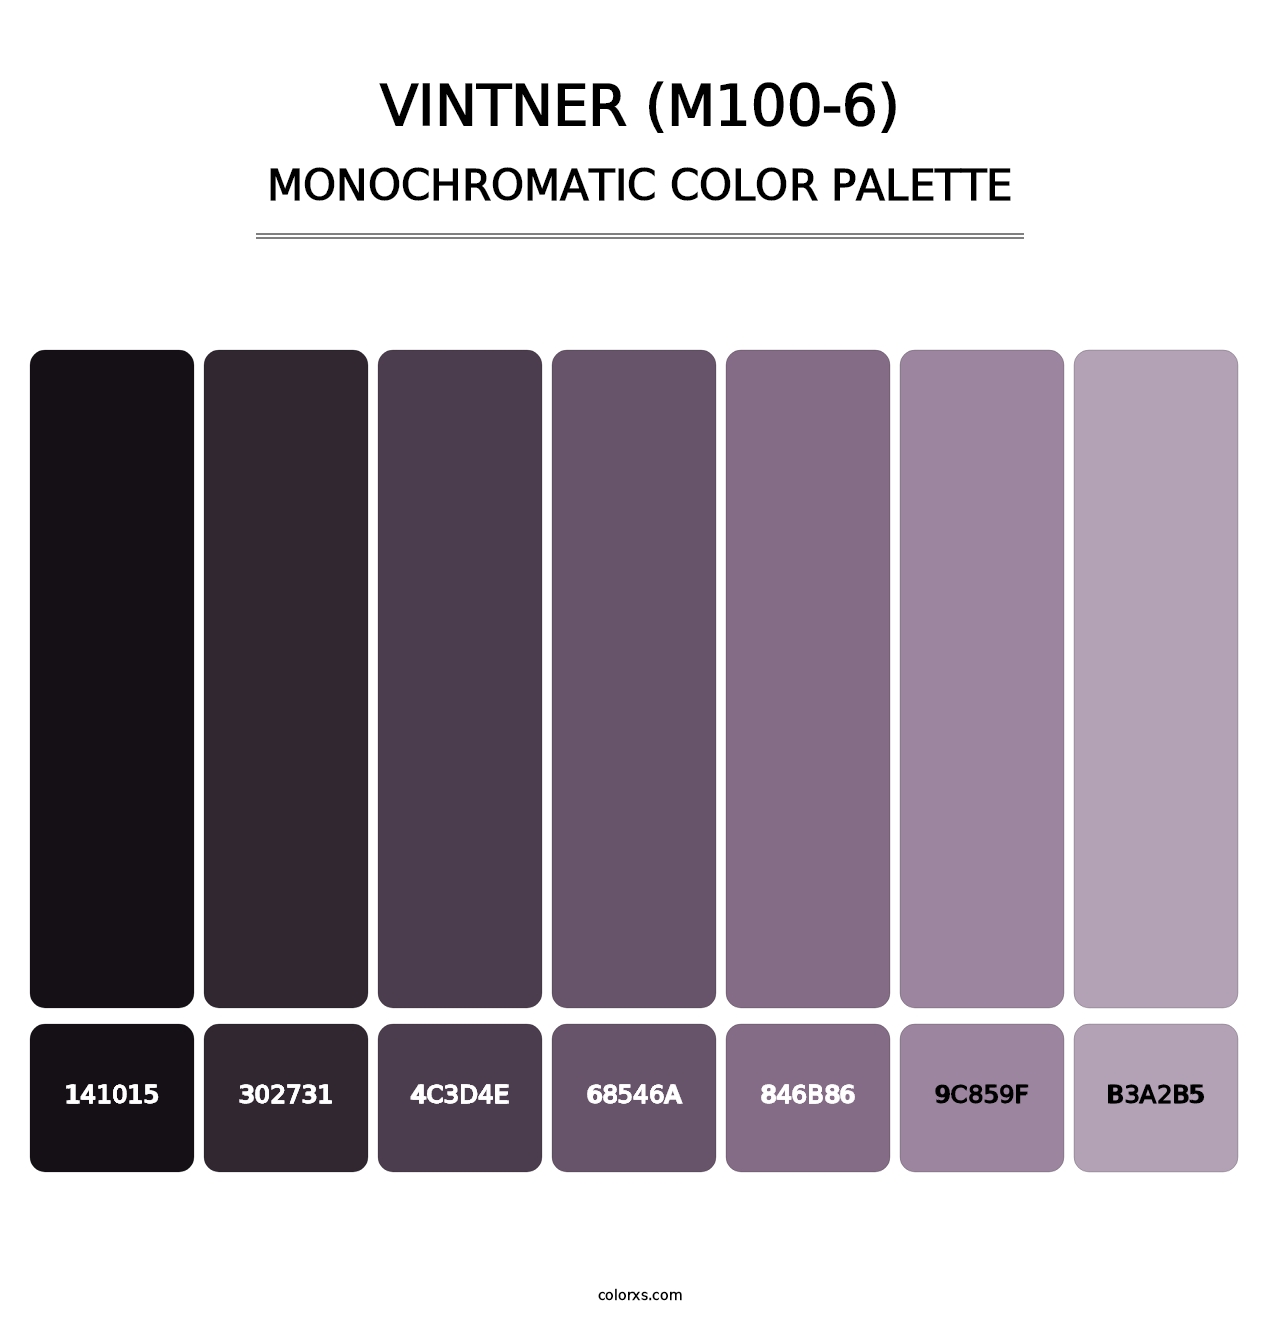 Vintner (M100-6) - Monochromatic Color Palette